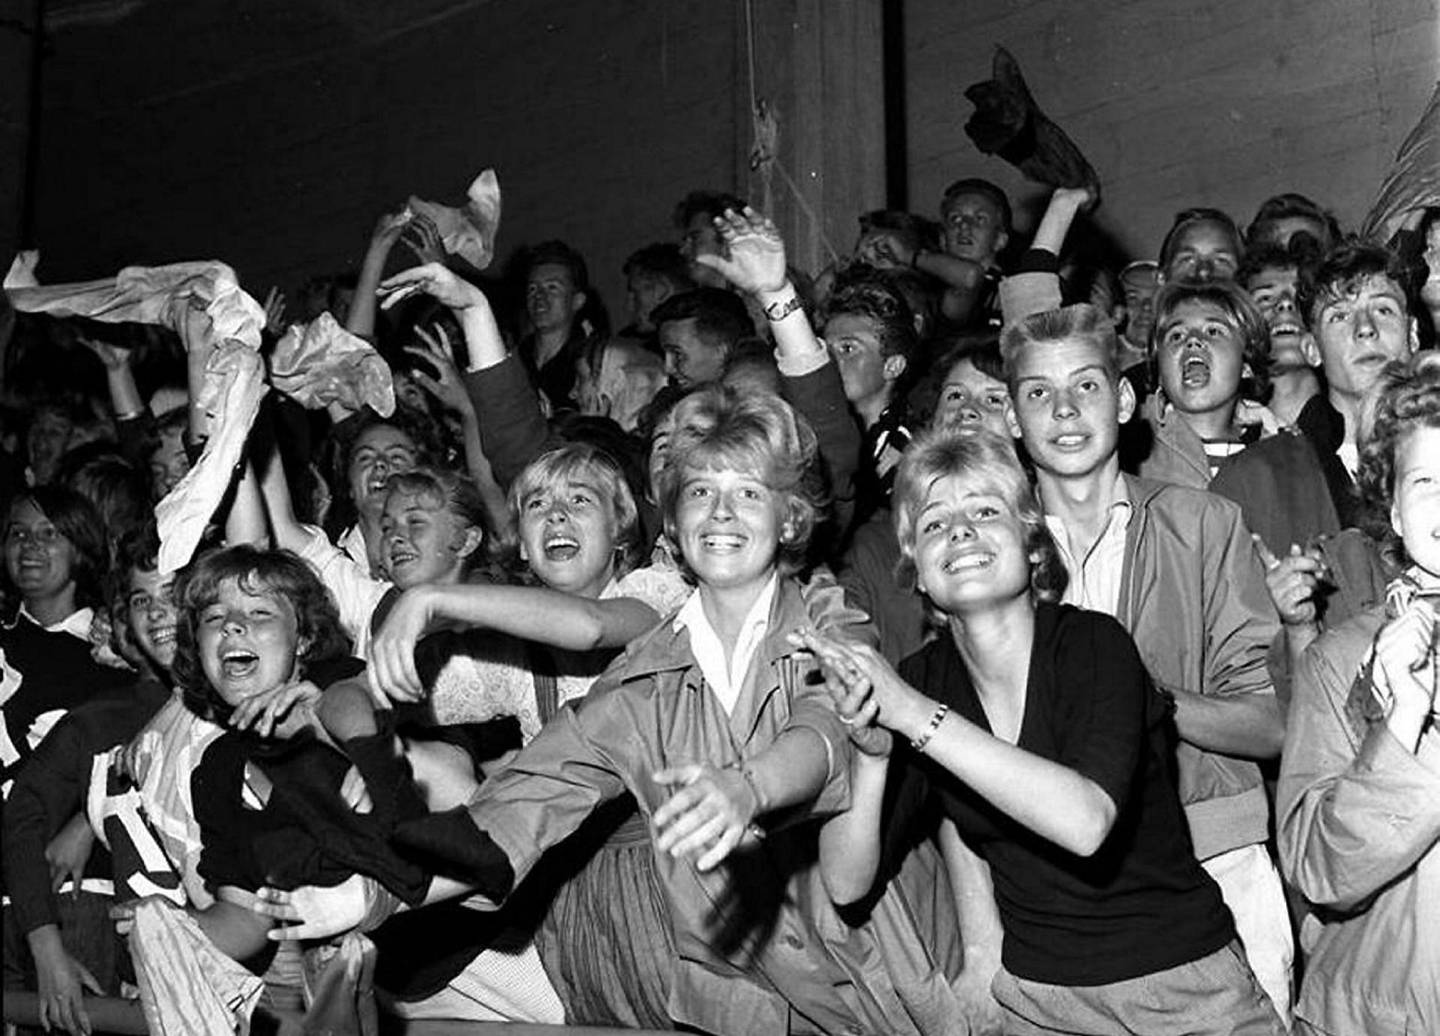 Sånn var stemningen på rockekonsert i Oslo i 1959. Ble den noen gang bedre? FOTO: ARBEIDERBLADET/ARBEIDERBEVEGELSENS ARKIV